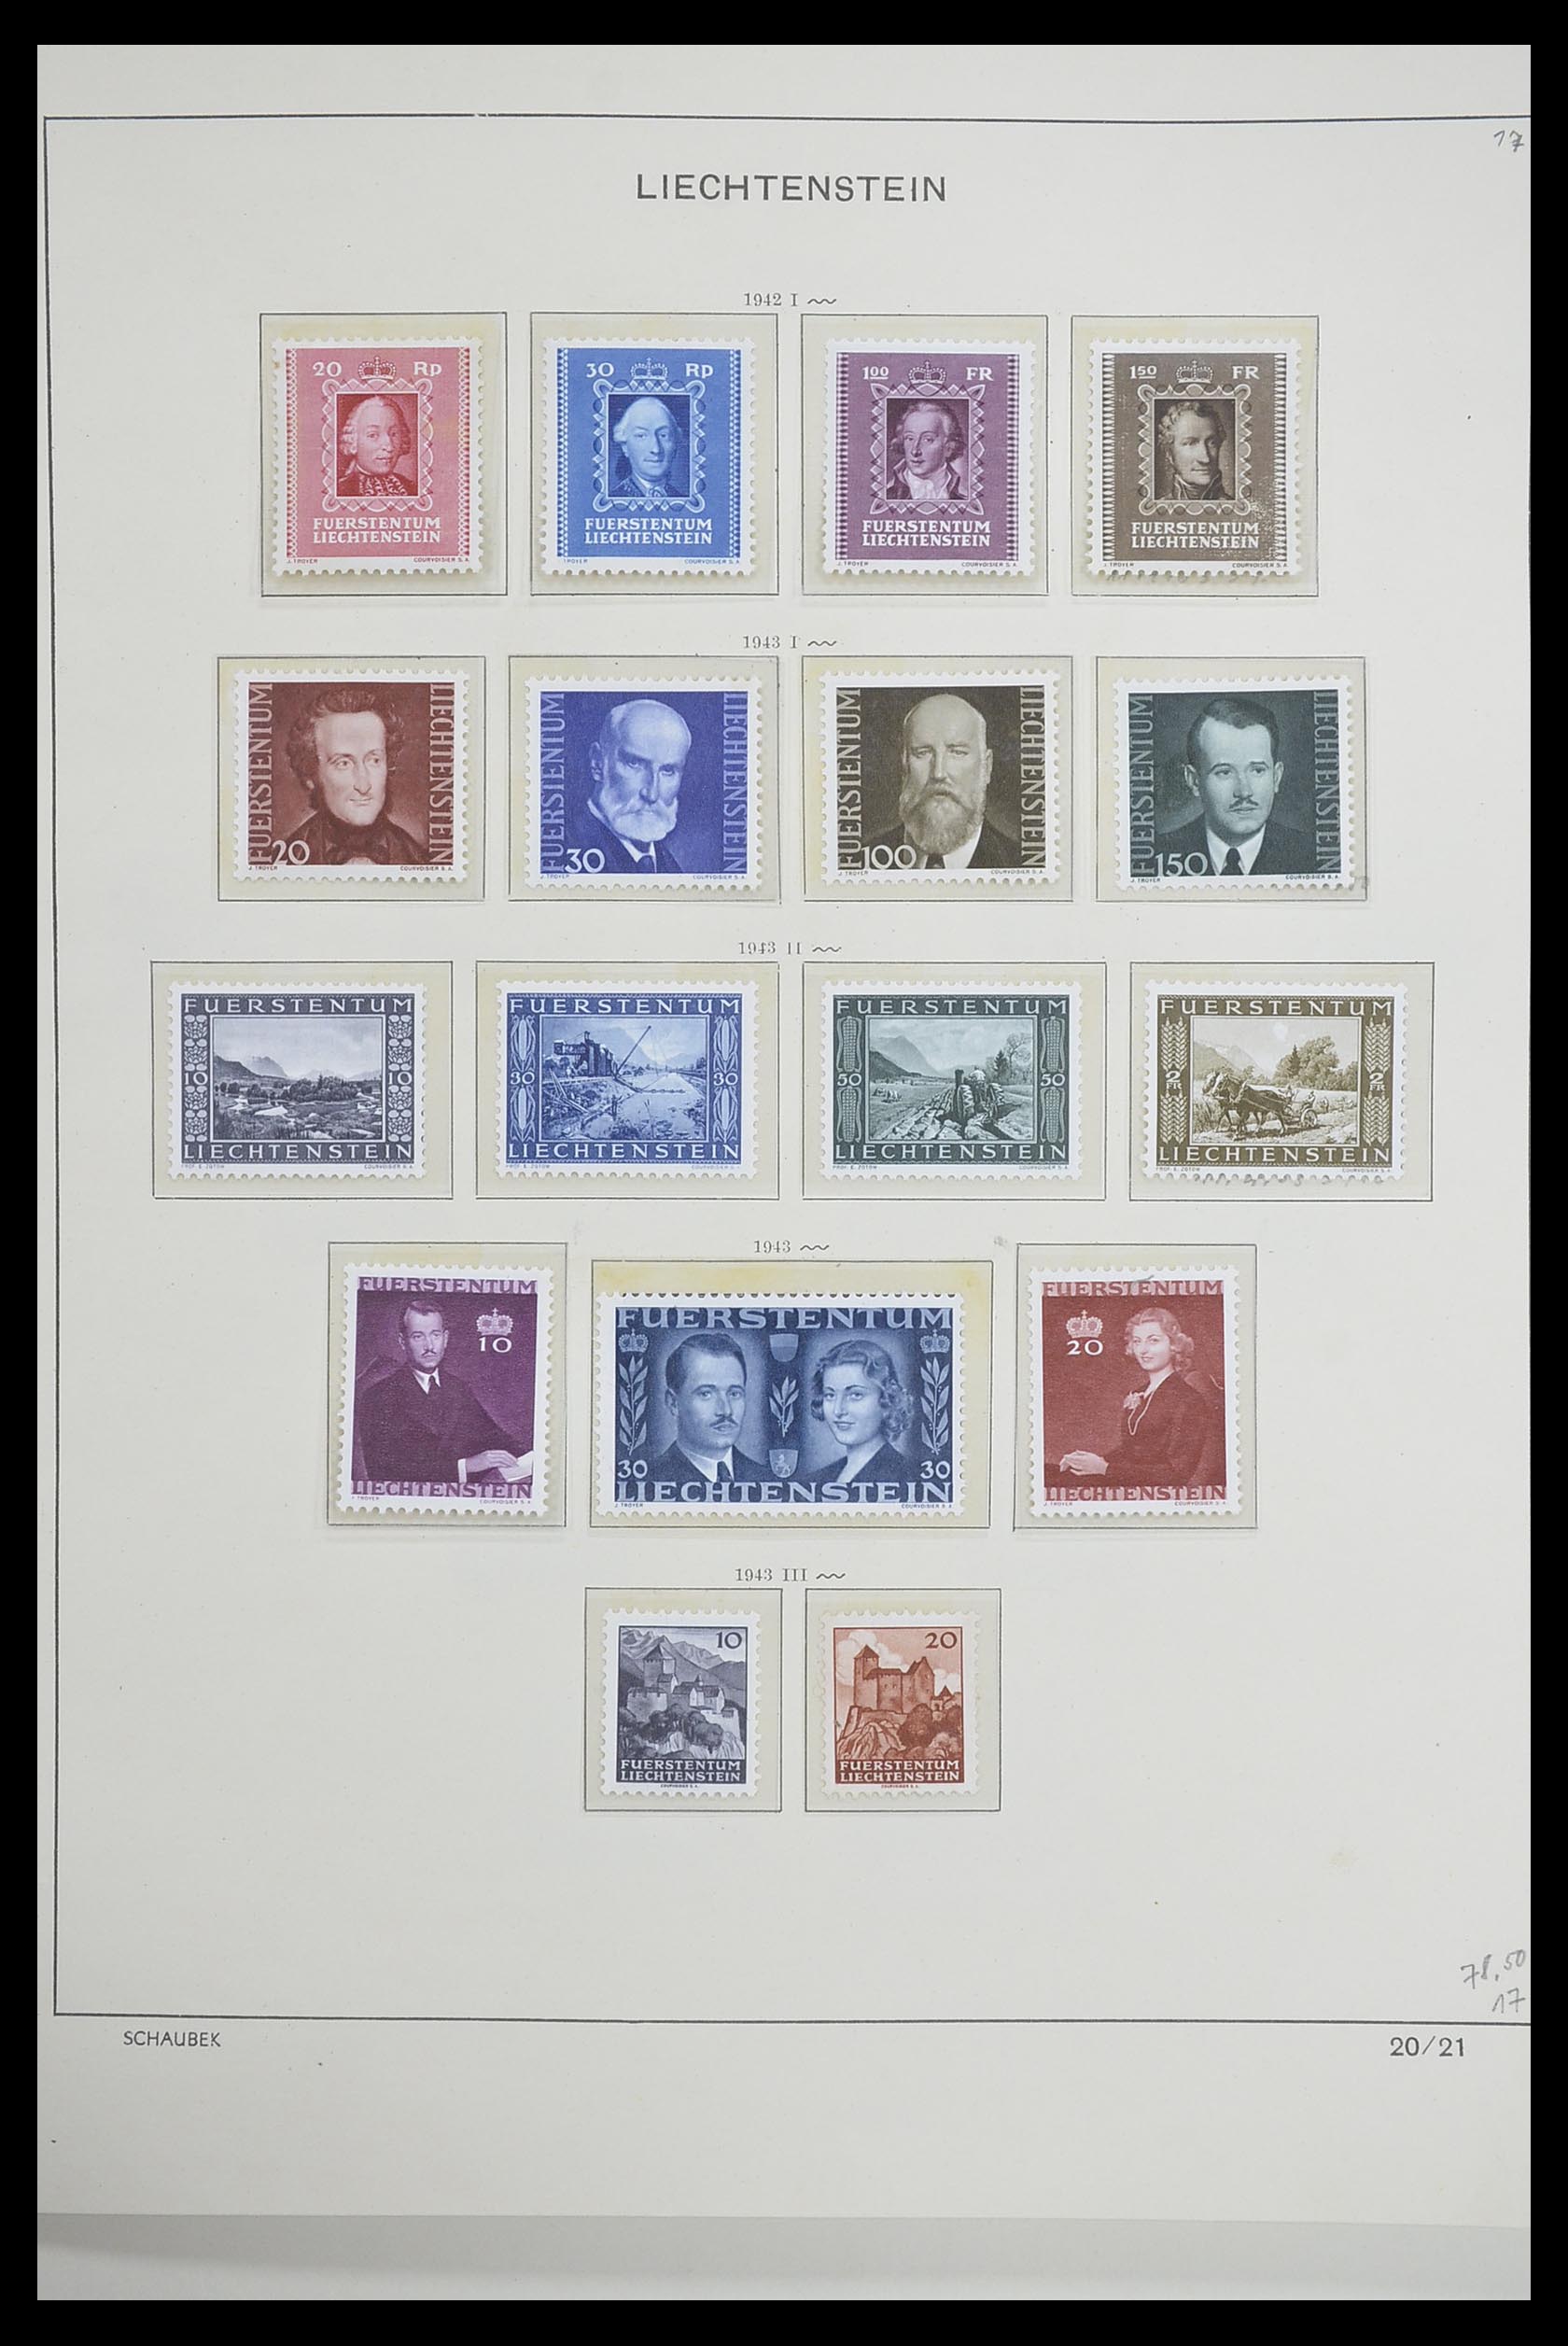 33274 018 - Stamp collection 33274 Liechtenstein 1912-1996.